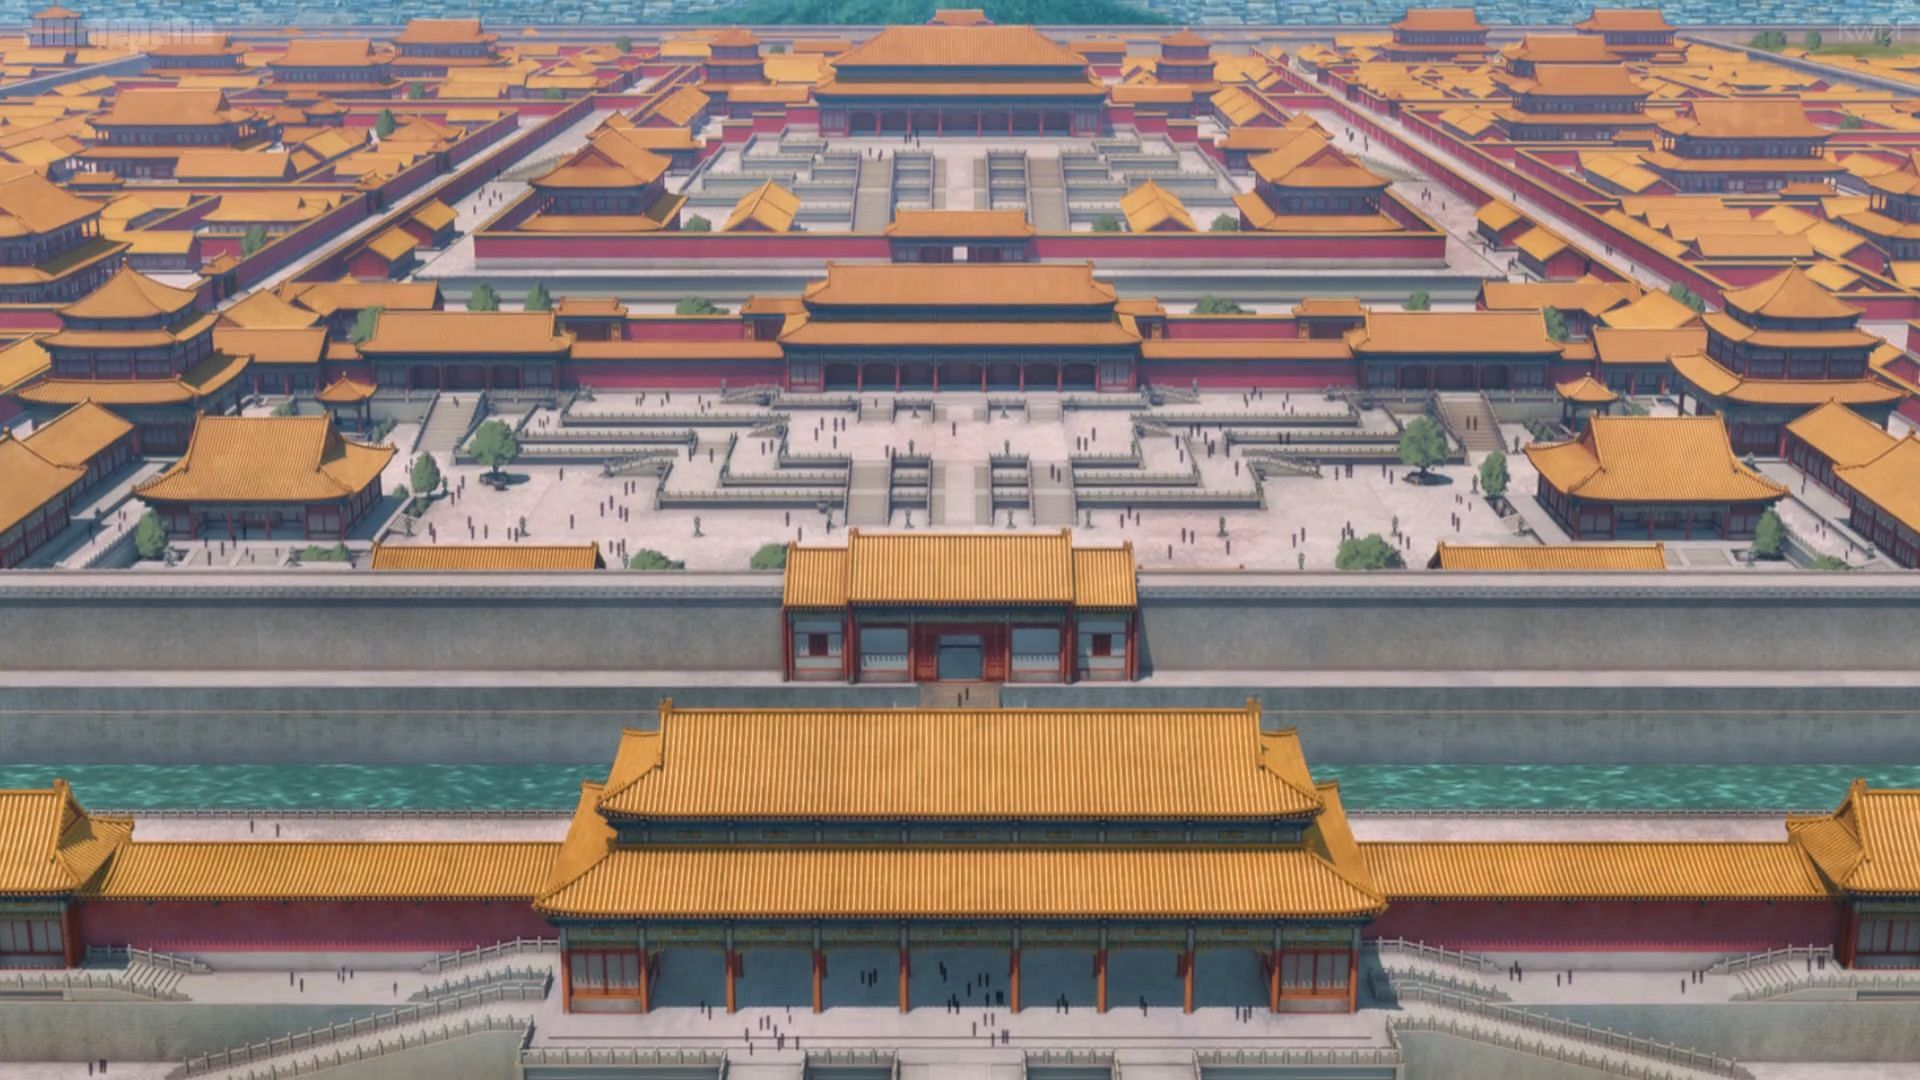 A shot of the palace where Maomao was forced to work (Image via OLM, TOHO Animation)